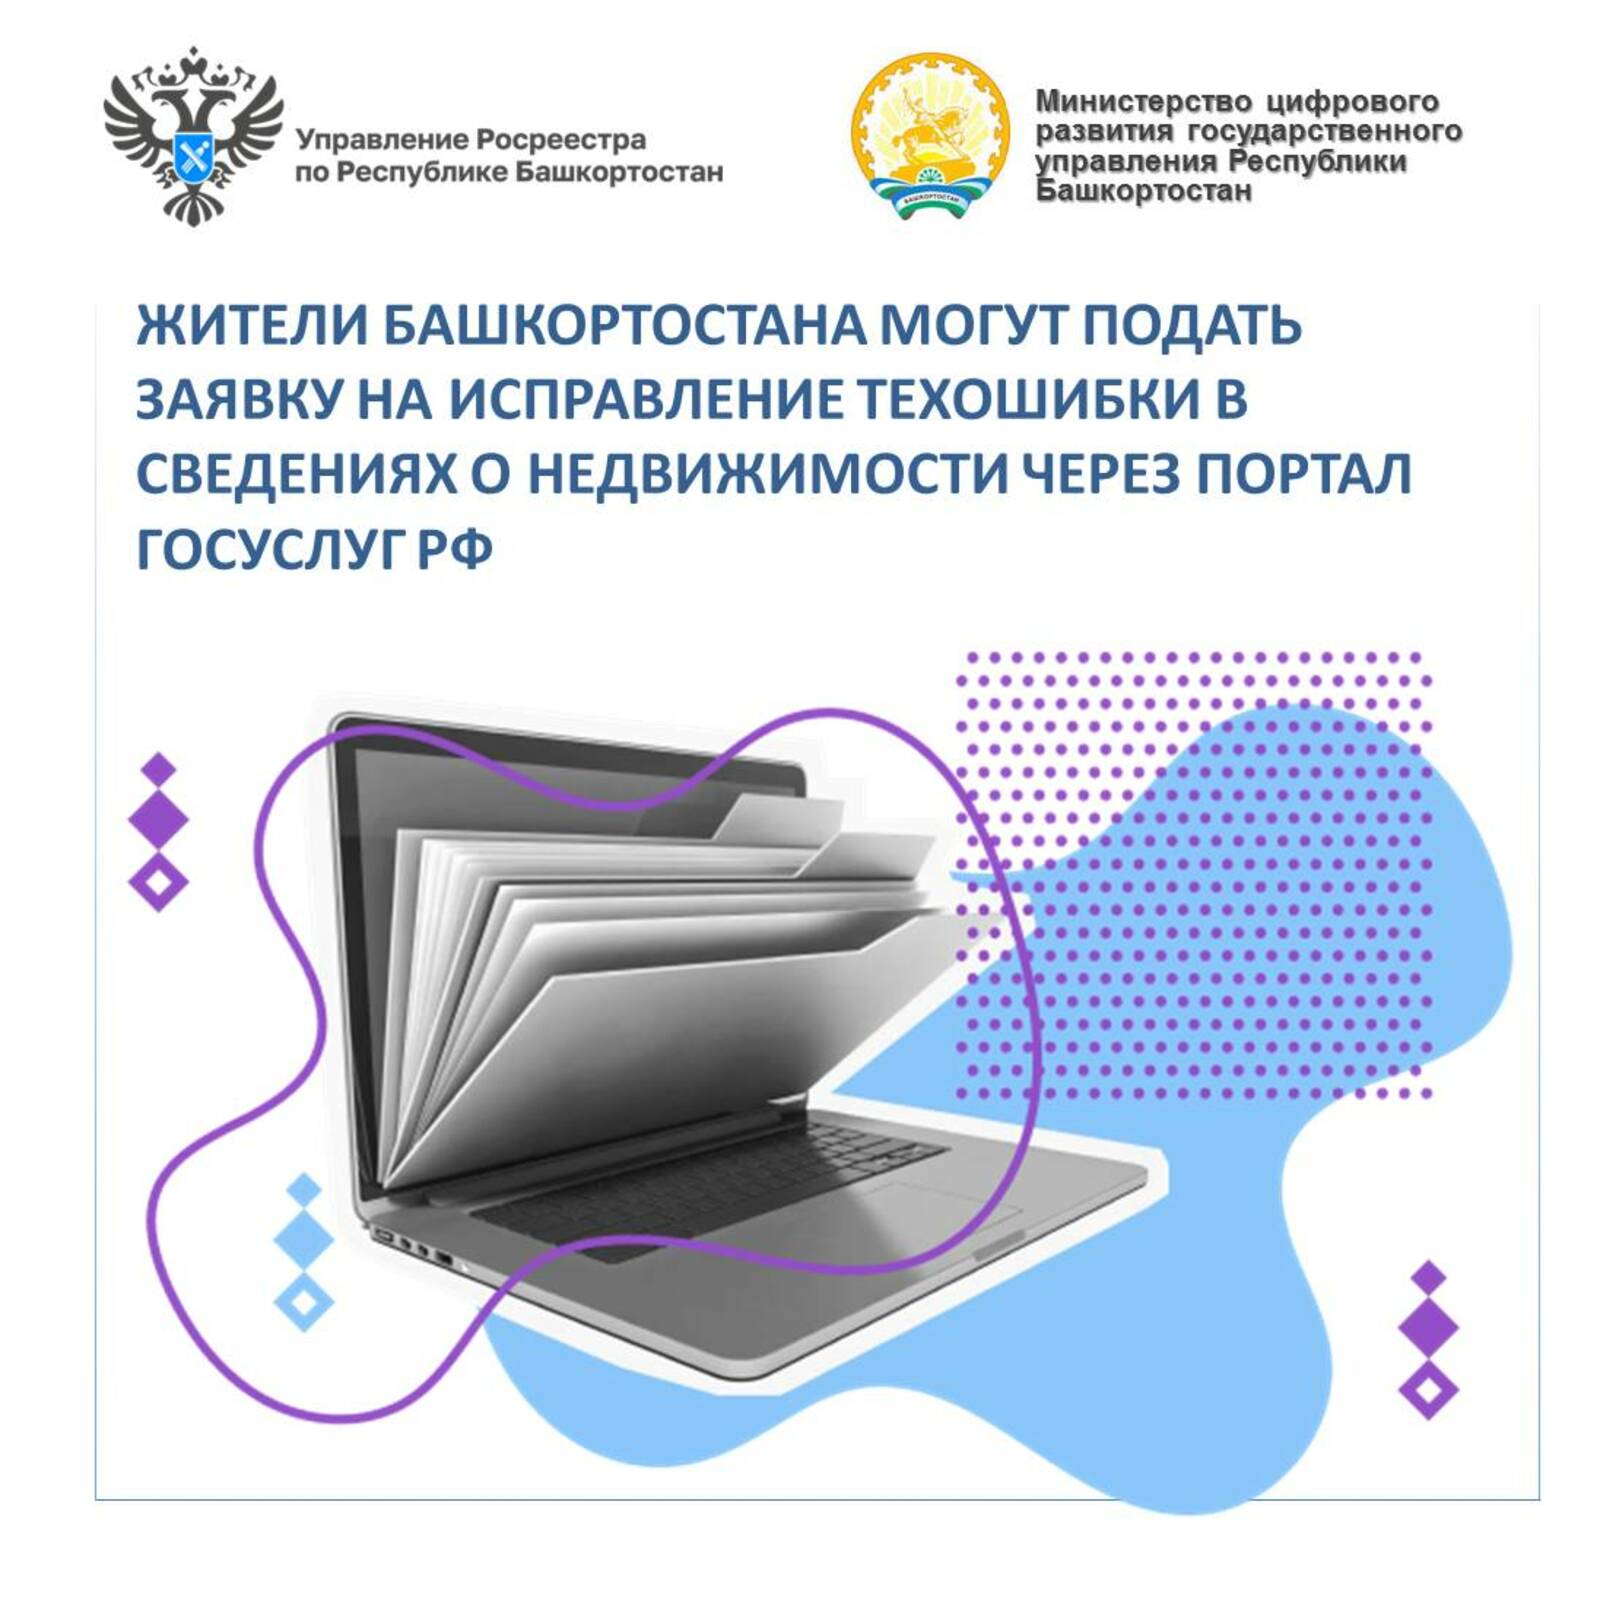 Жители Башкортостана могут подать заявку на исправление техошибки в сведениях о недвижимости через портал Госуслуг РФ